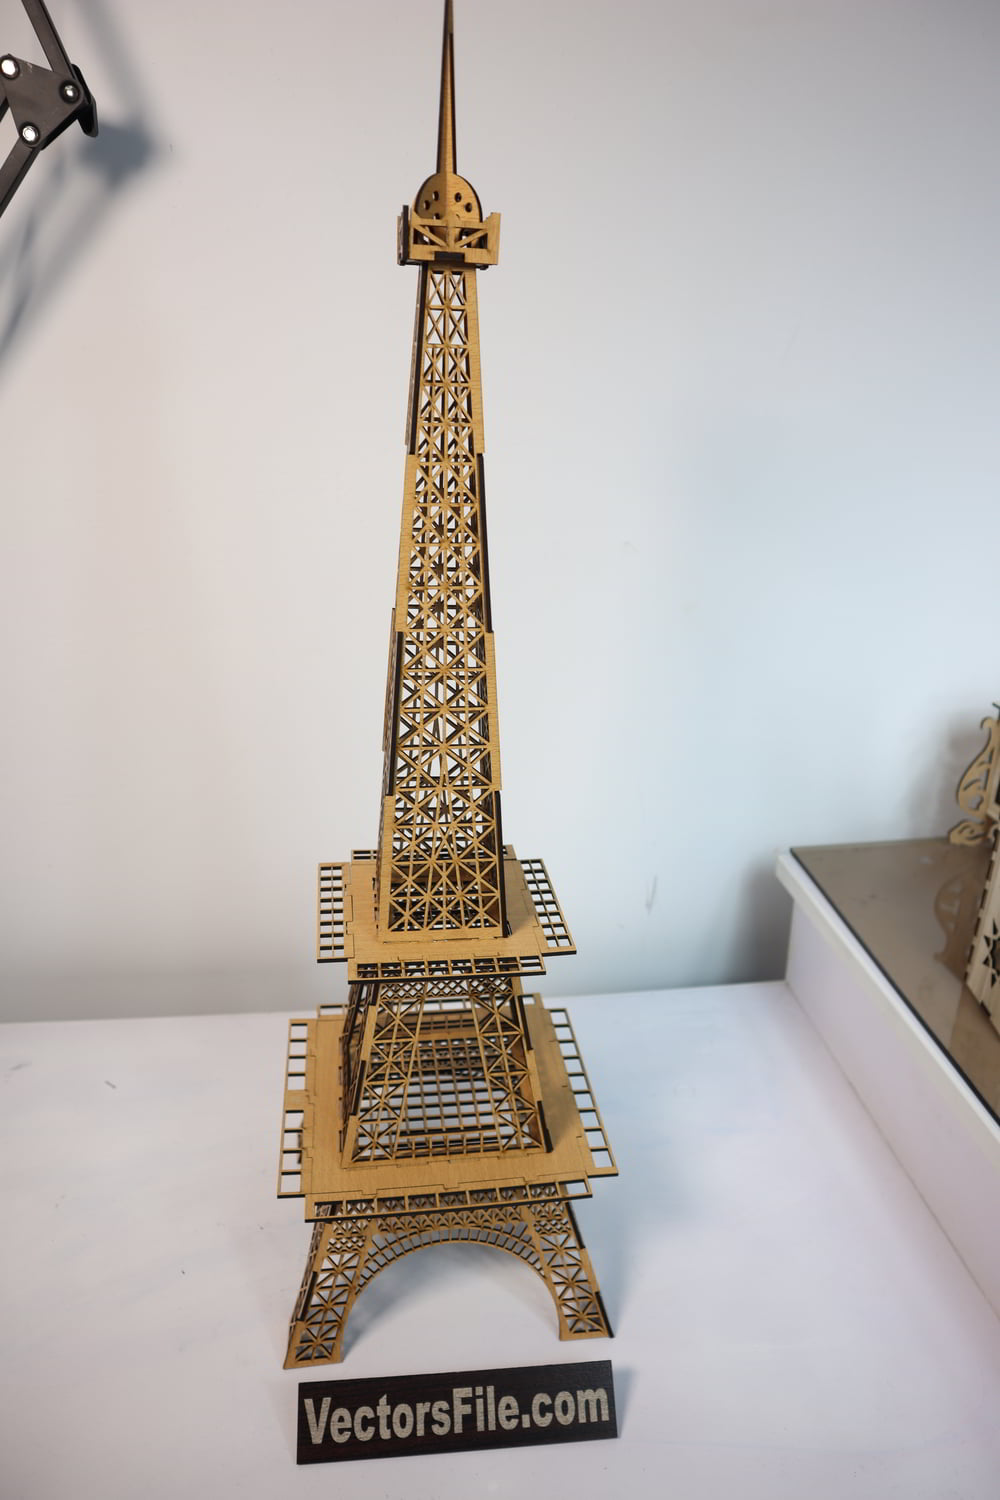 Laser Cut 3D Puzzle Eiffel Tower Architectural Model 3D Wooden Eiffel Tower Puzzle Vector File